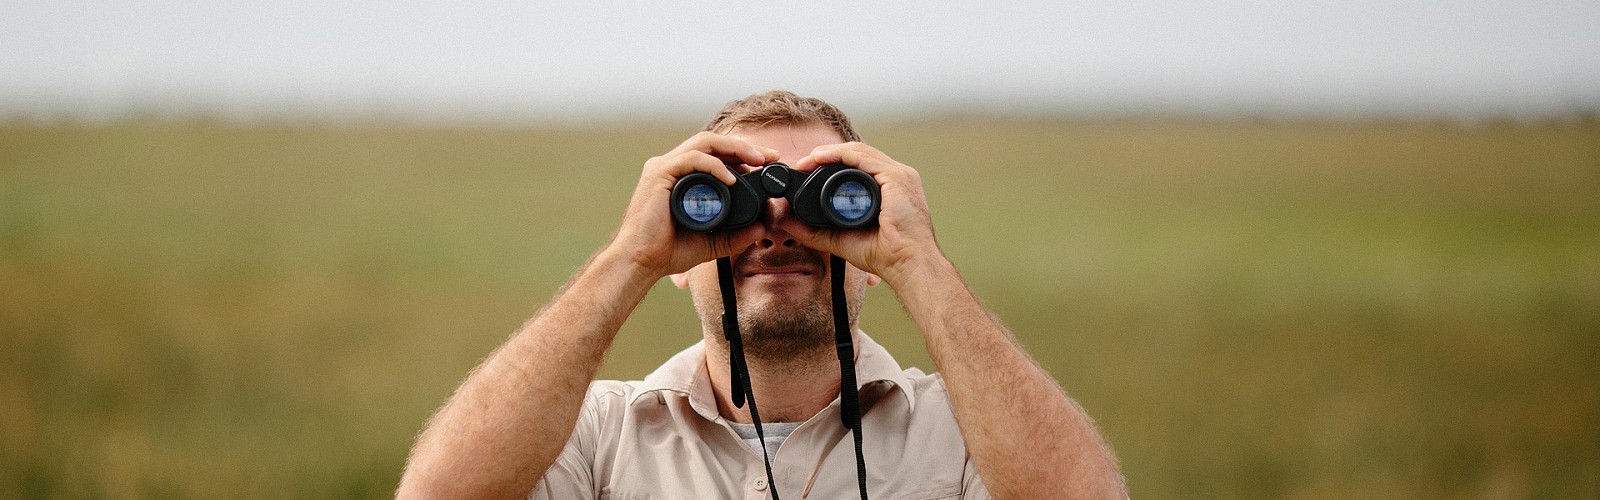 man looking through binoculars (StockSnap / pixabay)